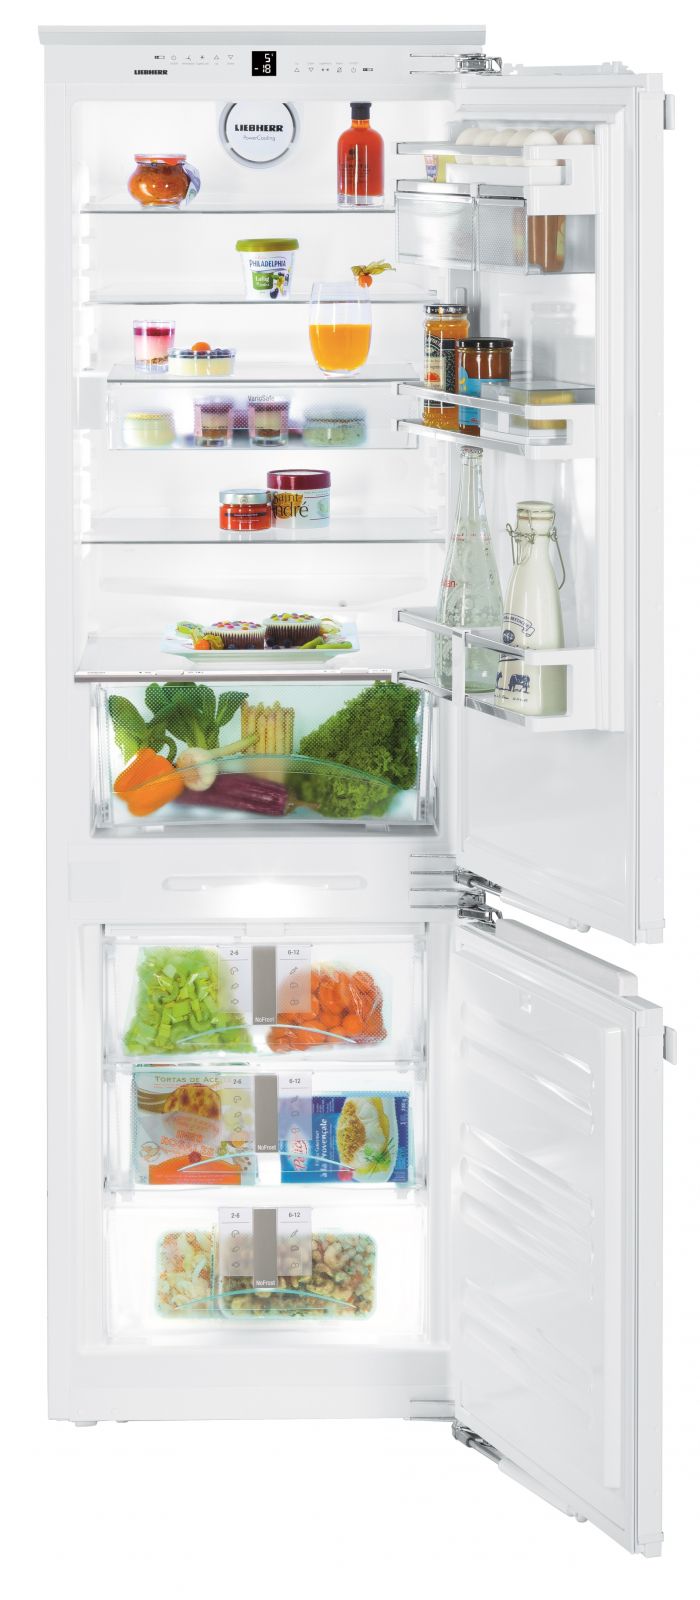 Холодильник встроенный двухкамерный no frost. Liebherr ICN 3376 Premium NOFROST. Либхер холодильник встраиваемый двухкамерный. Холодильник Liebherr ICN 5123. Холодильник Liebherr ICN 3056.